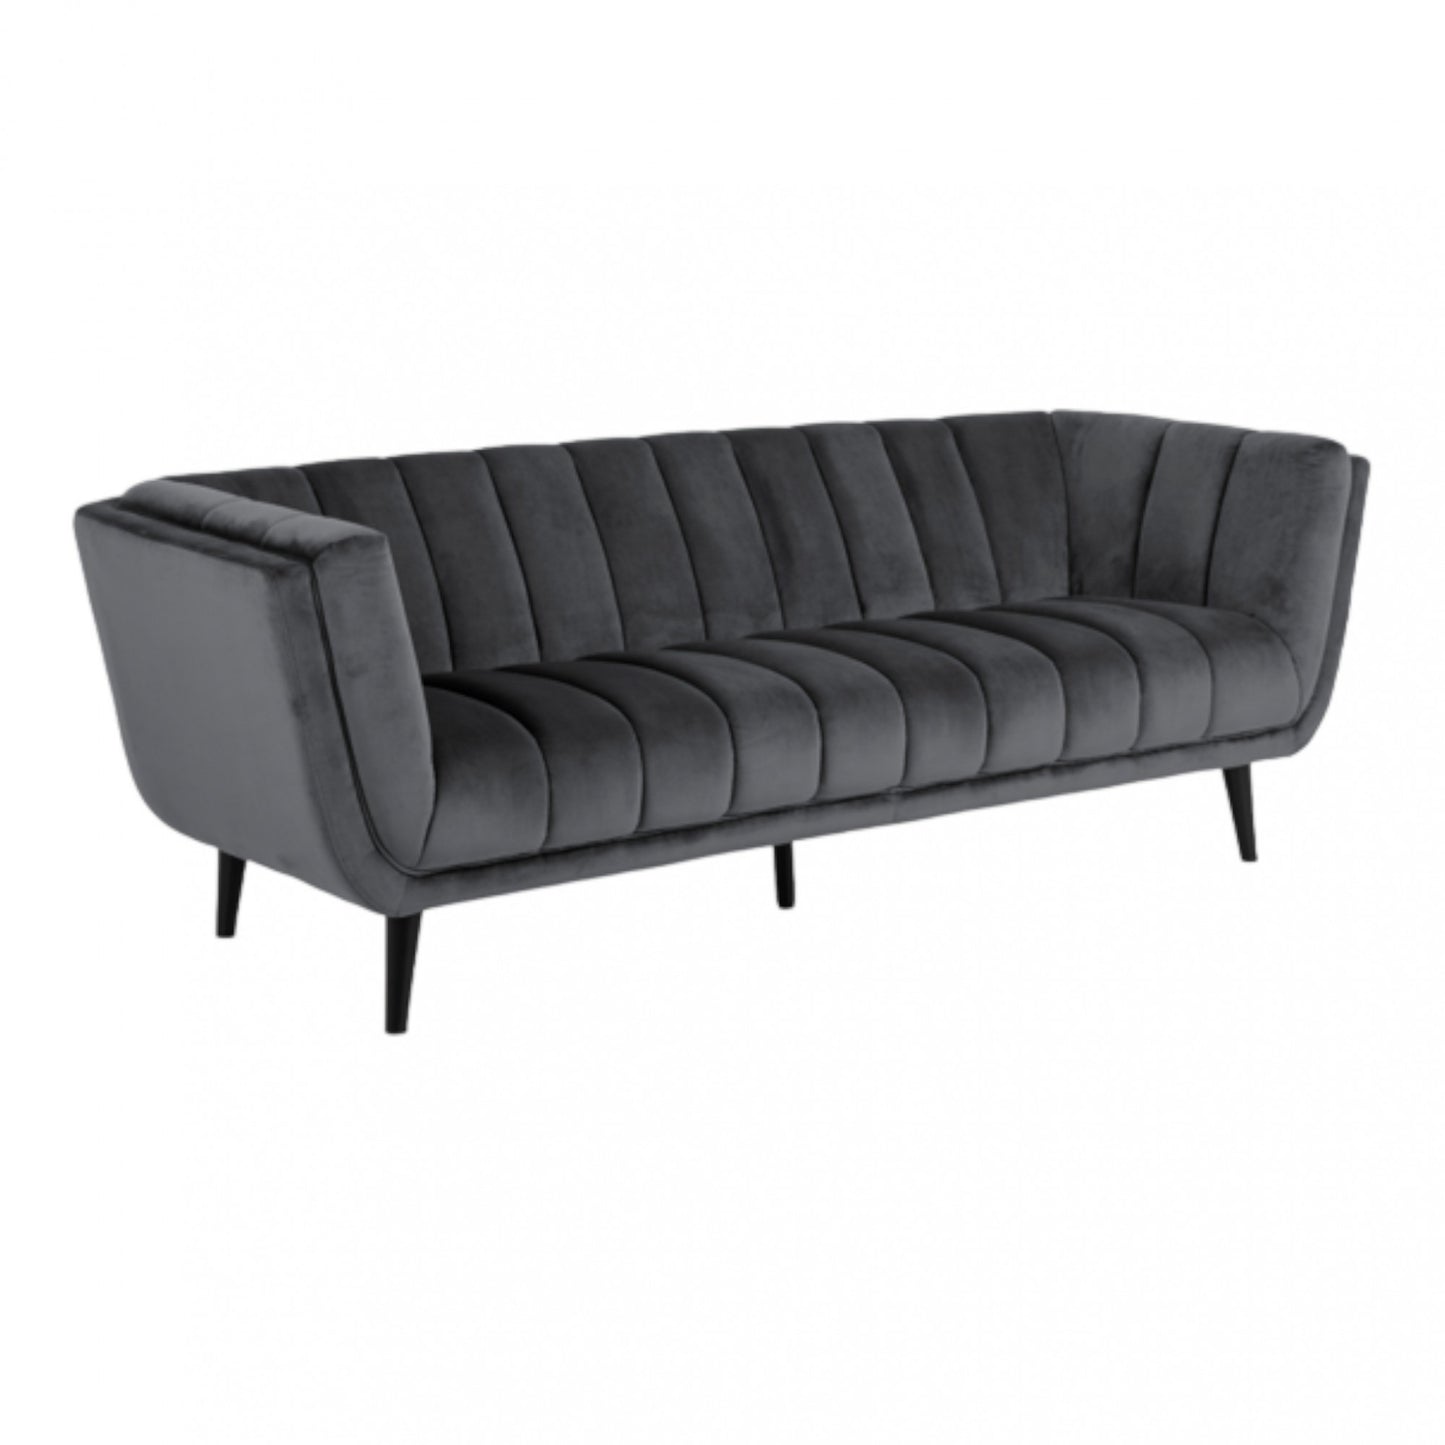 Som ny | Mørk grå Tampa 3-seter sofa